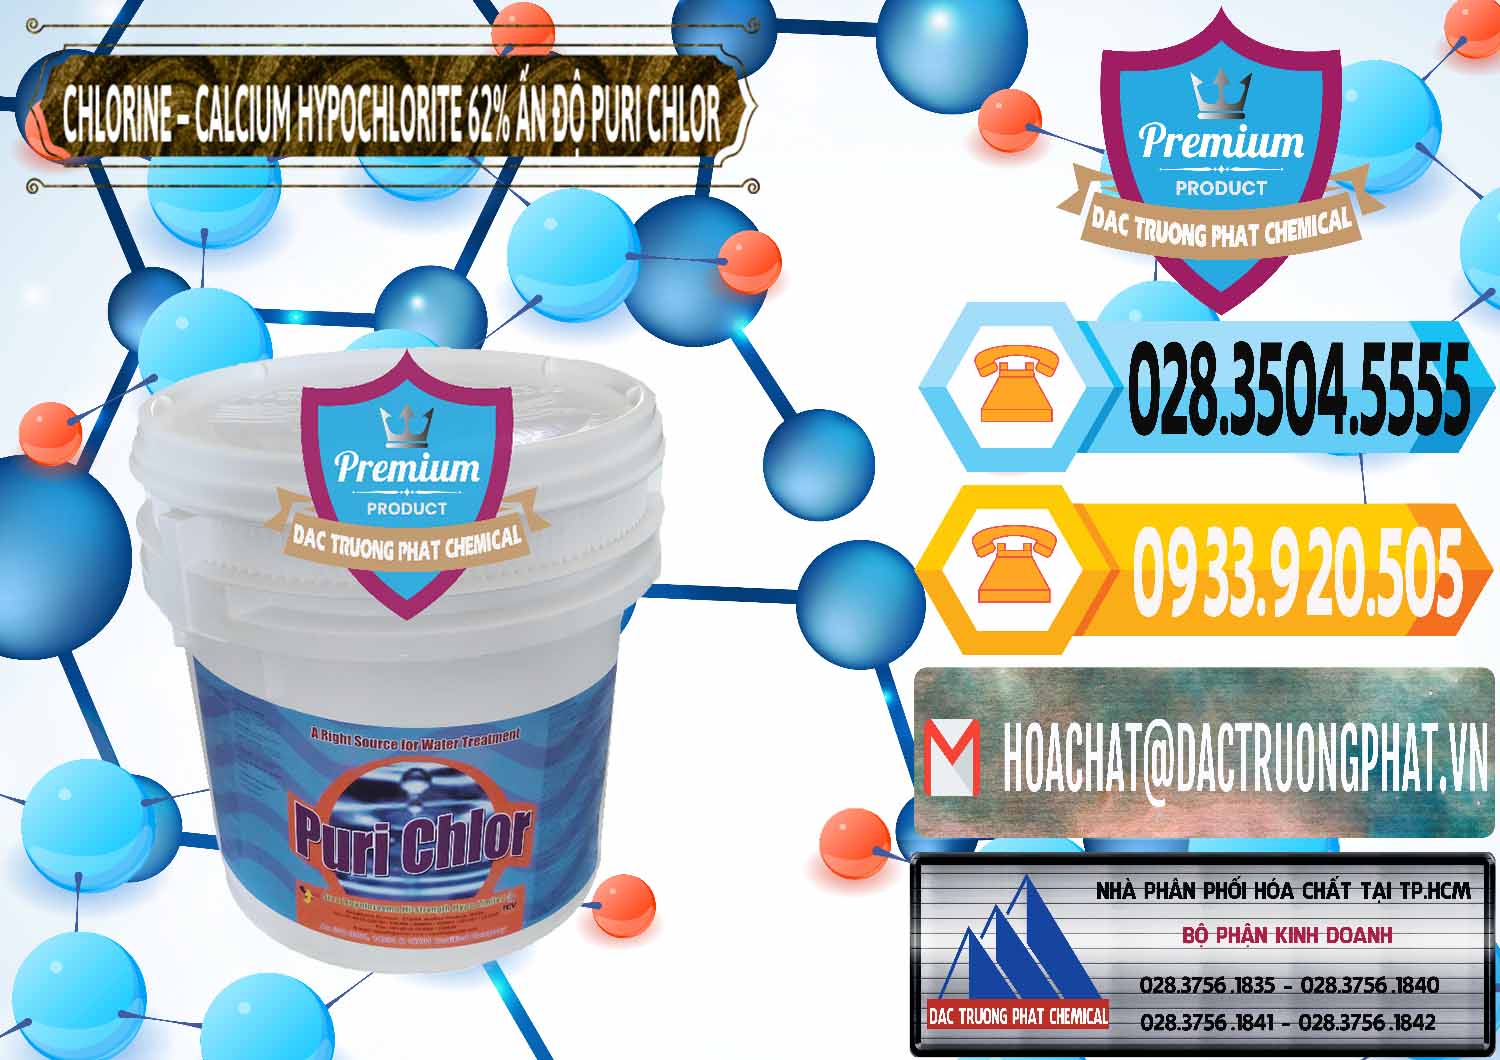 Nơi chuyên bán _ phân phối Chlorine – Clorin 62% Puri Chlo Ấn Độ India - 0052 - Nơi chuyên phân phối _ nhập khẩu hóa chất tại TP.HCM - hoachattayrua.net